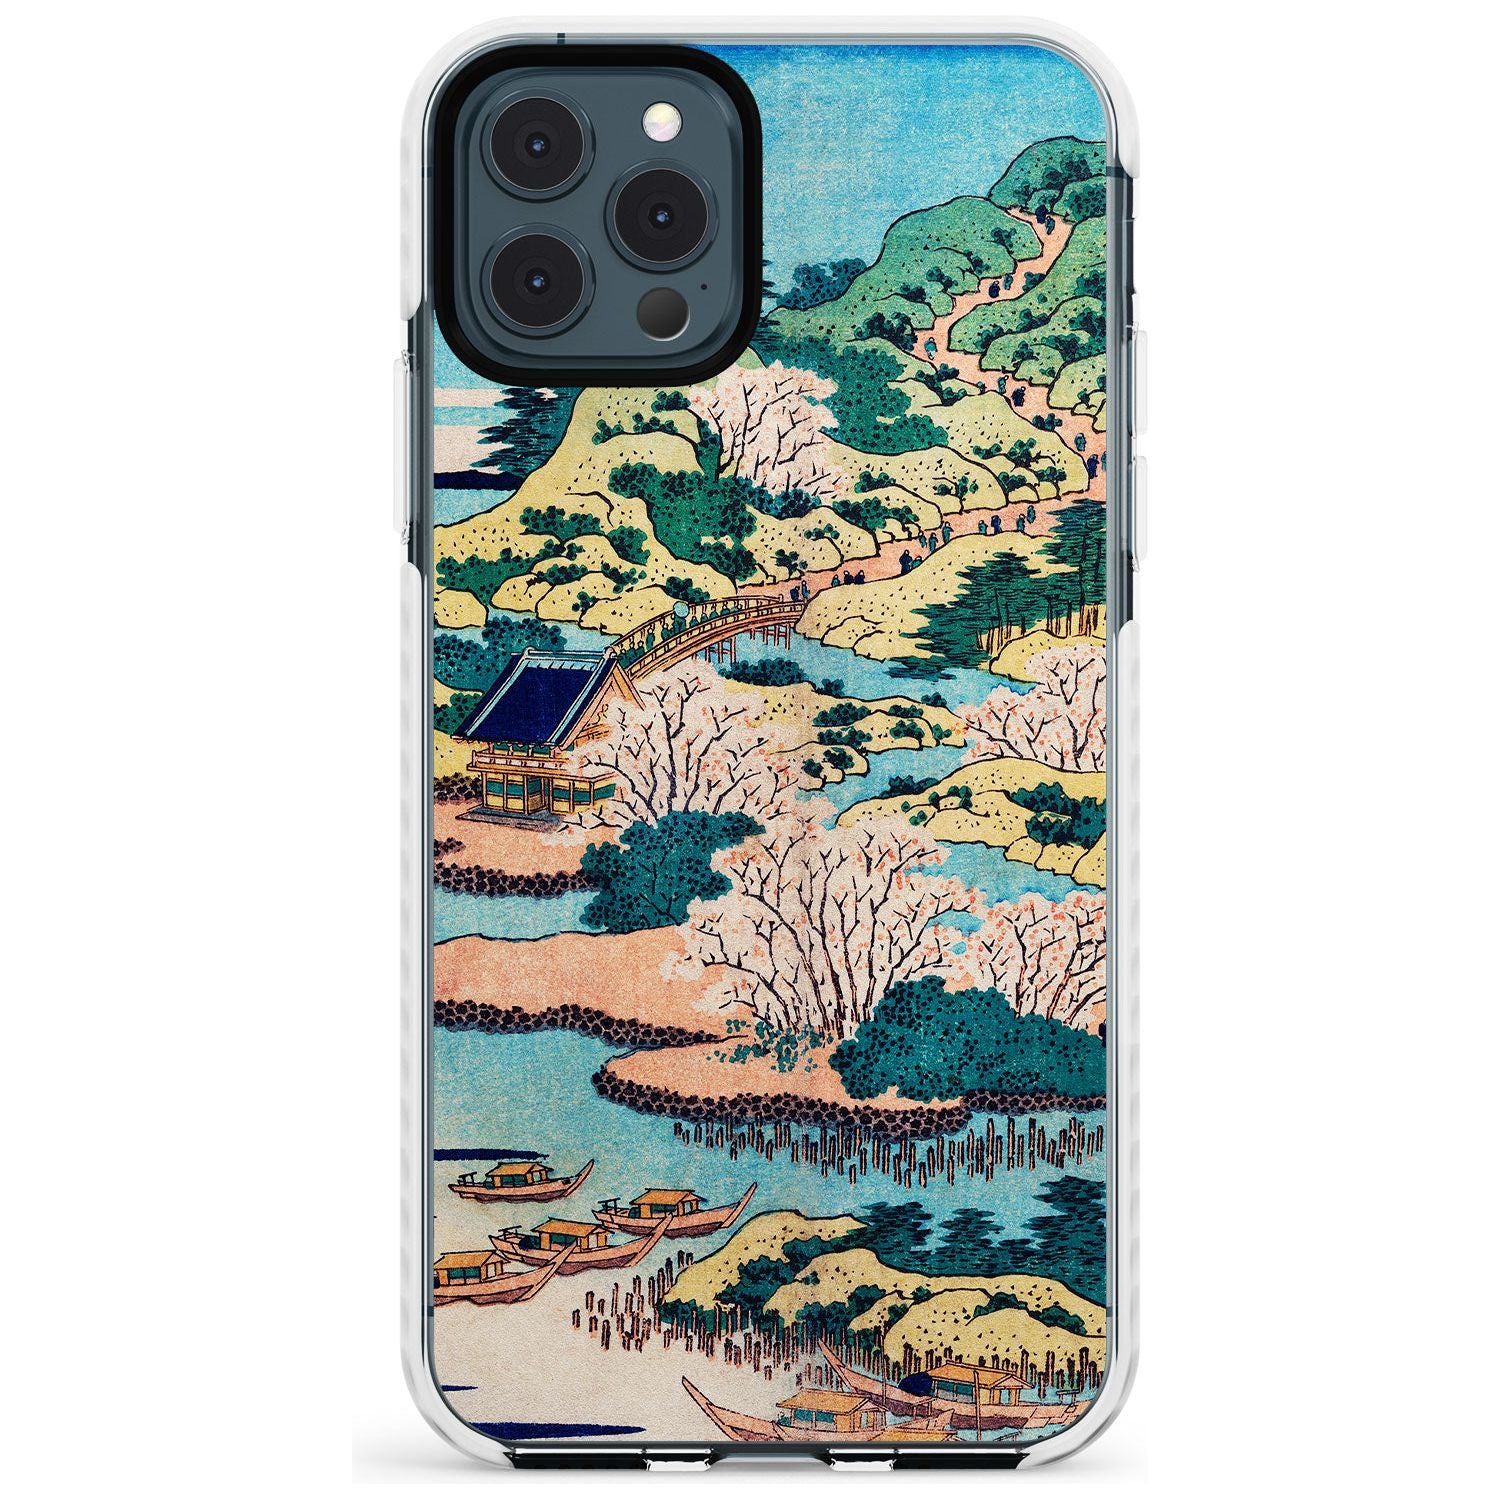 Coastal Community by Katsushika Hokusai  Slim TPU Phone Case for iPhone 11 Pro Max